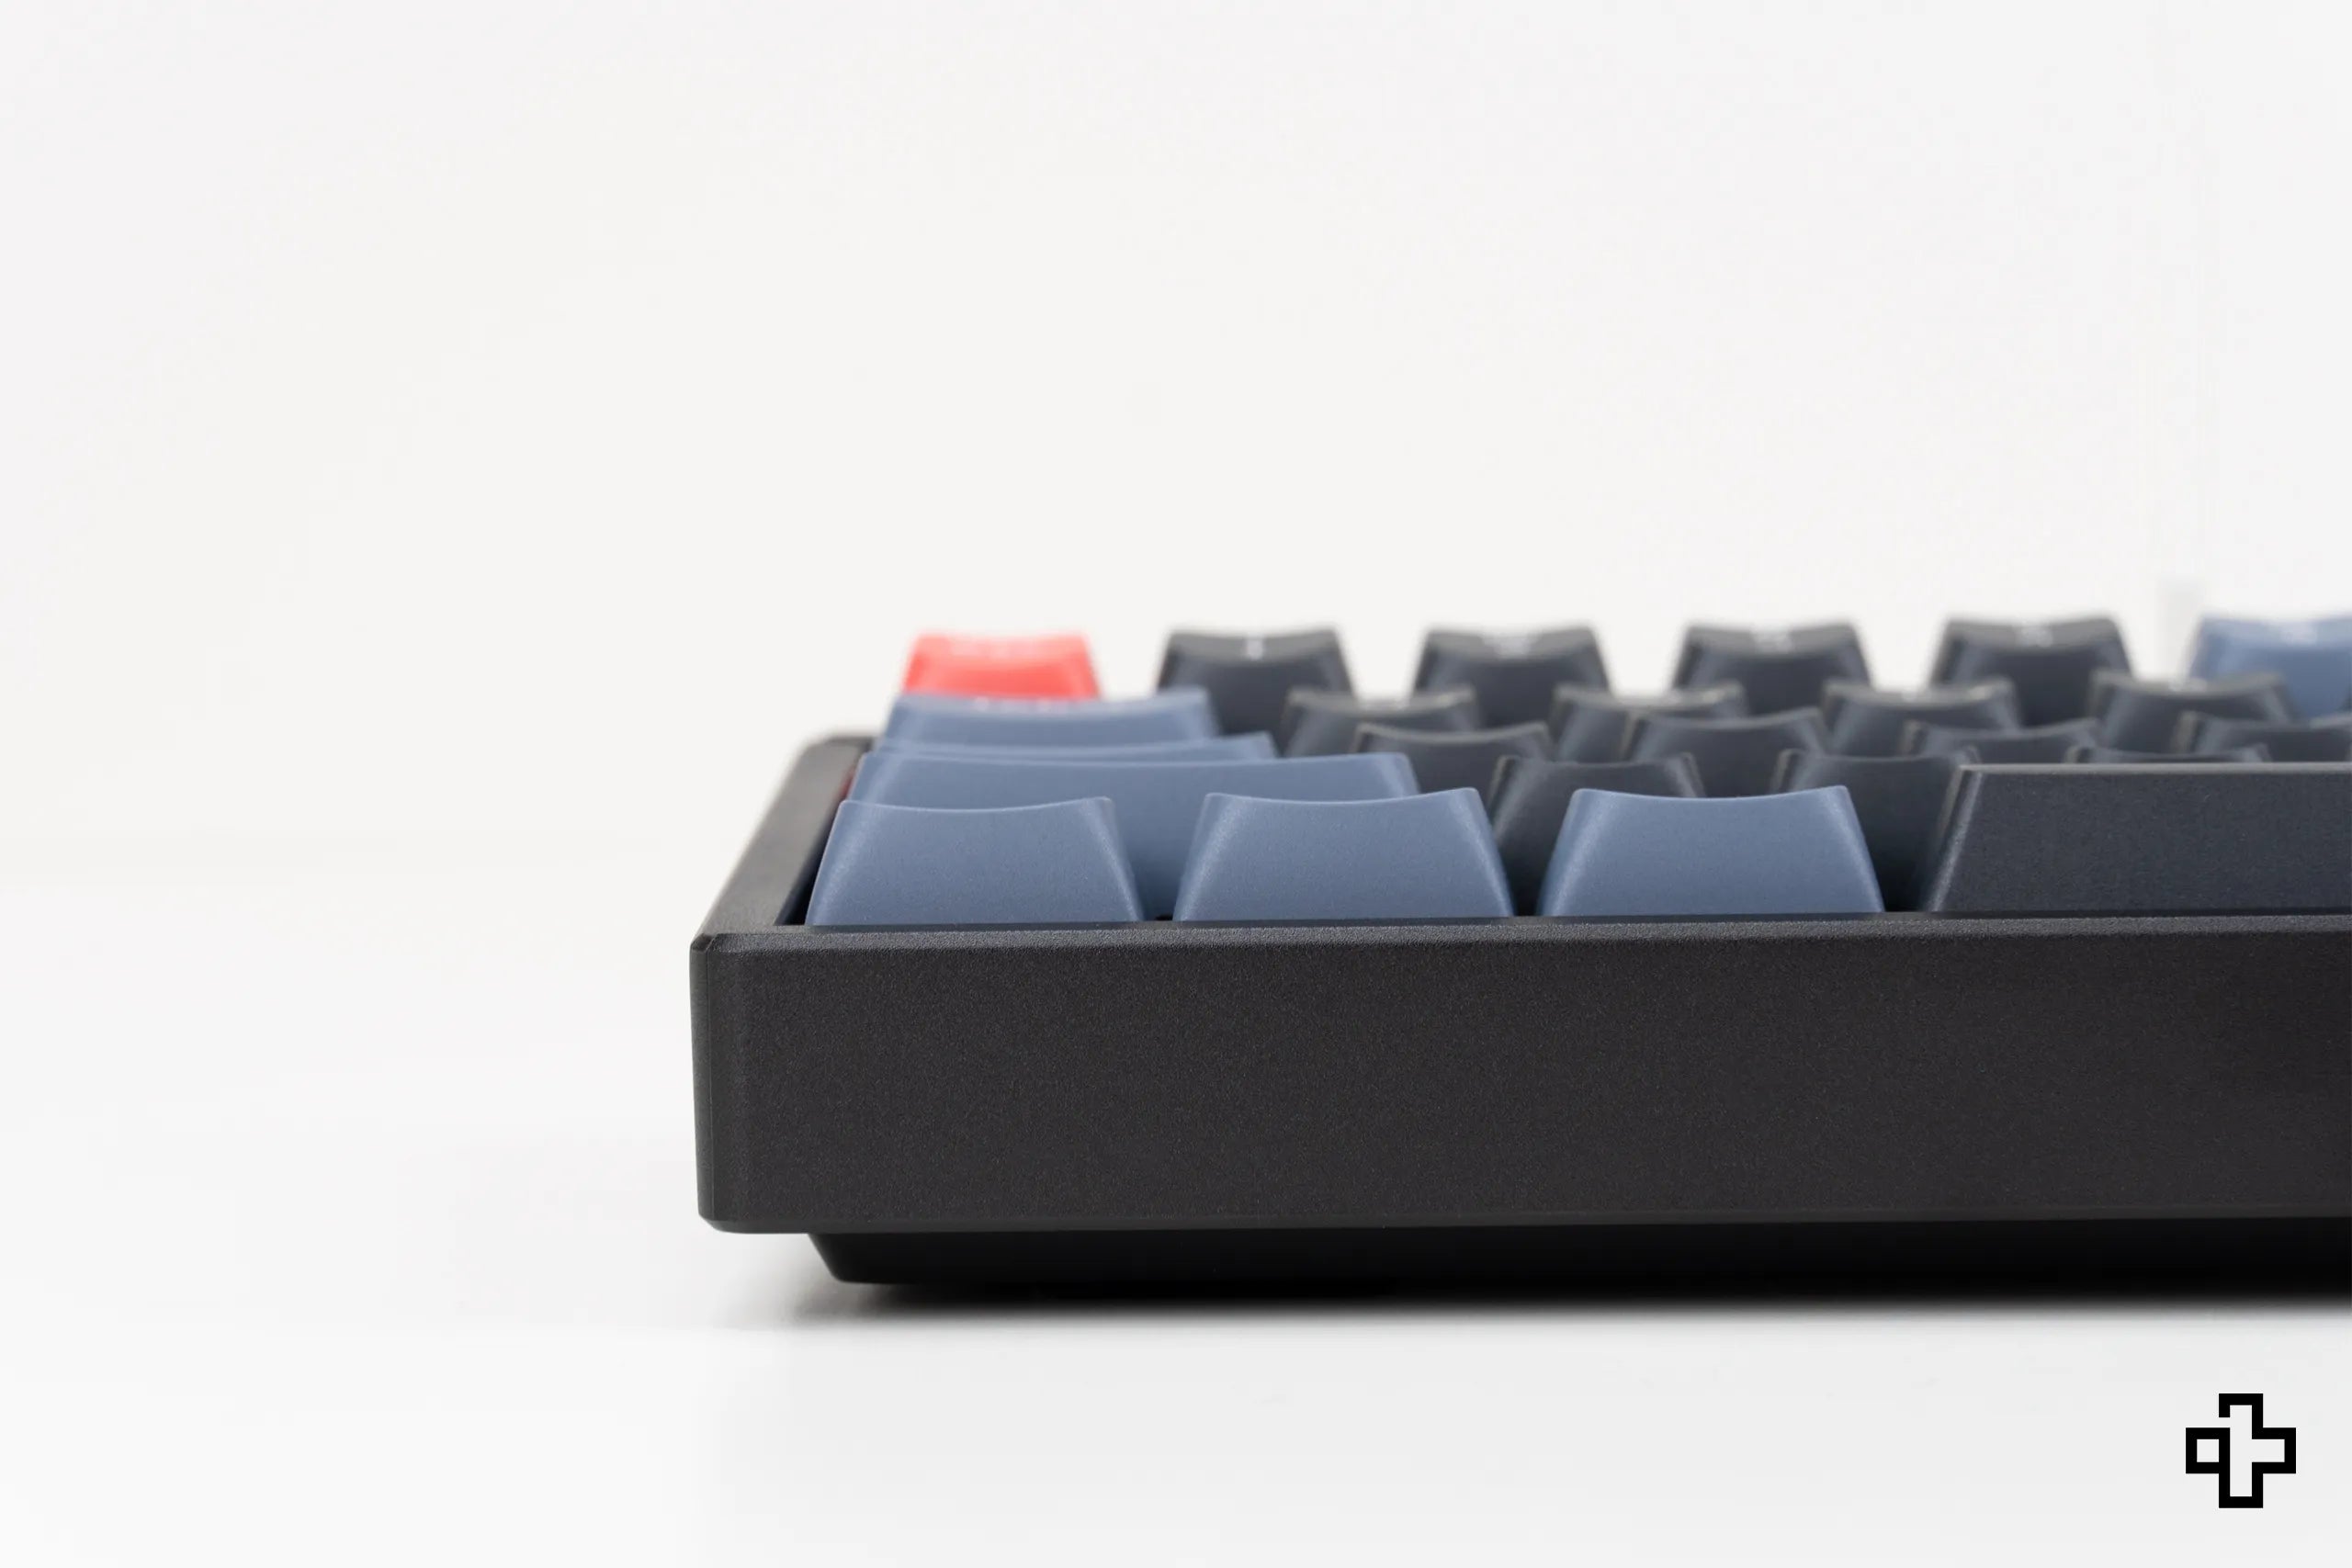 Keychron K6 Pro Hotswap RGB Tastatur mit kabellosem Aluminiumrahmen